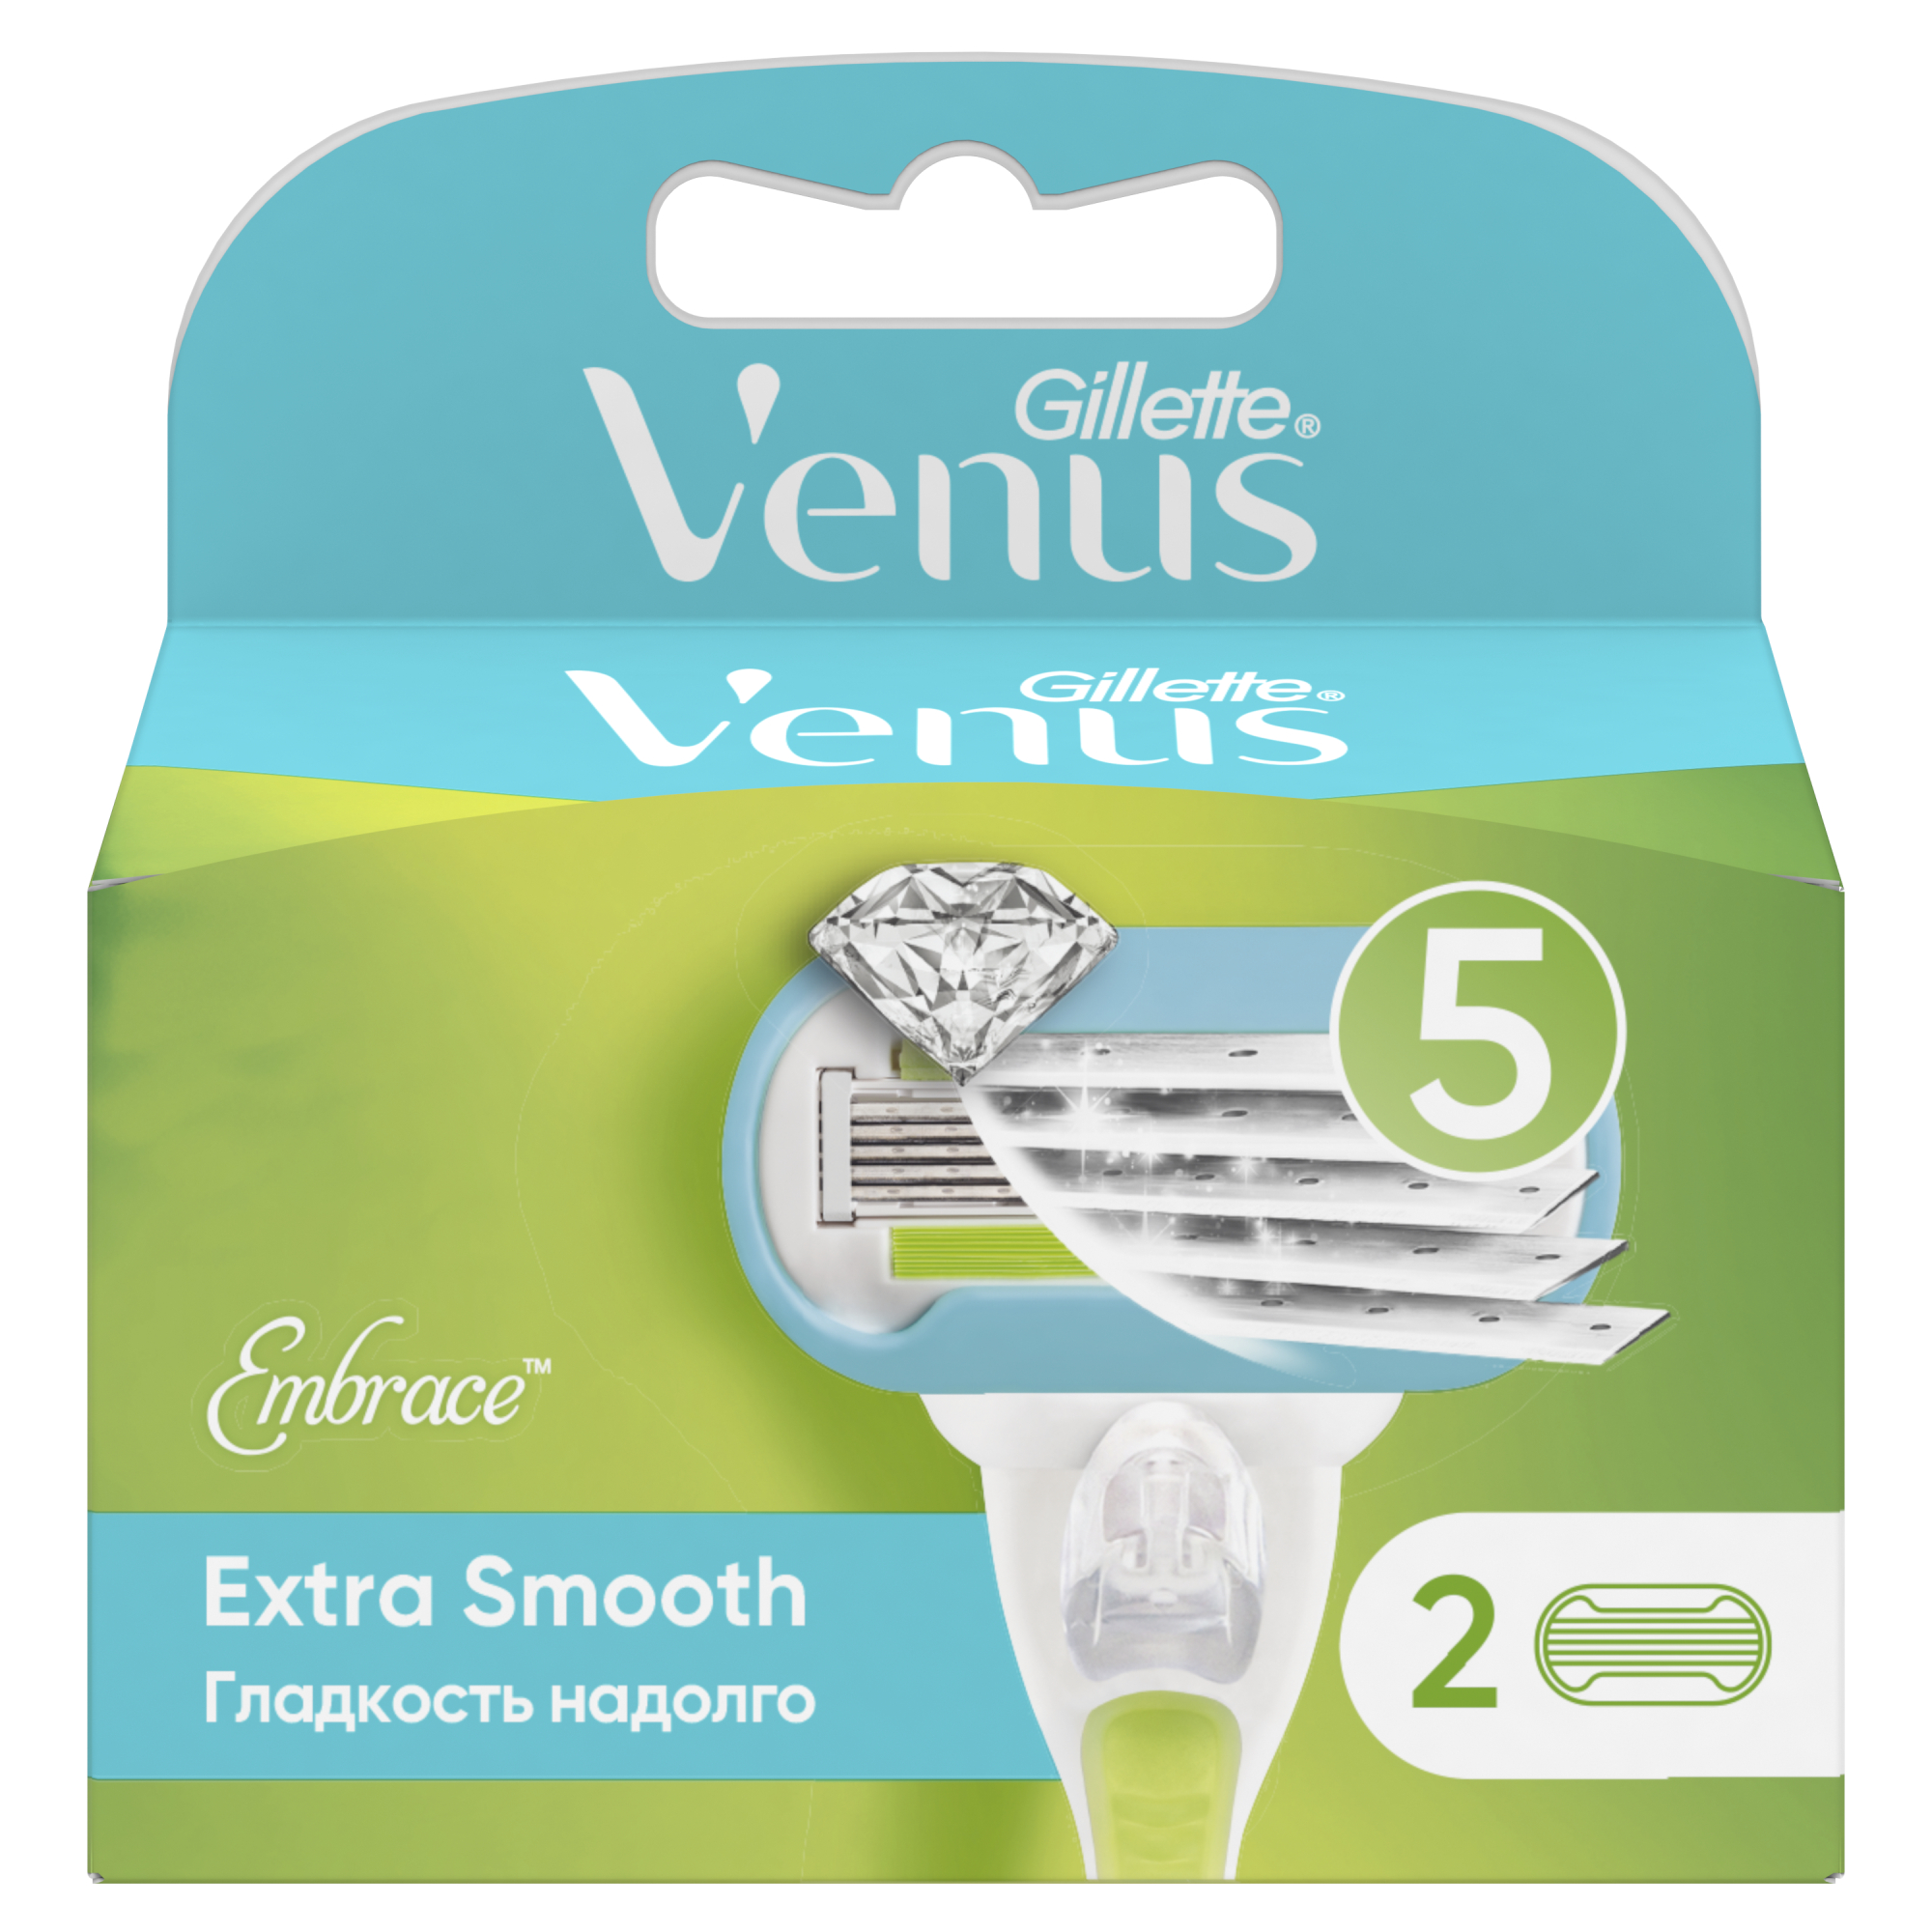 Сменные кассеты для женской бритвы Venus Extra Smooth, 5 лезвий, 2 шт невероятная гладкость надолго кассеты сменные для бритья bic click soleil 5 лезвий женские 4 шт